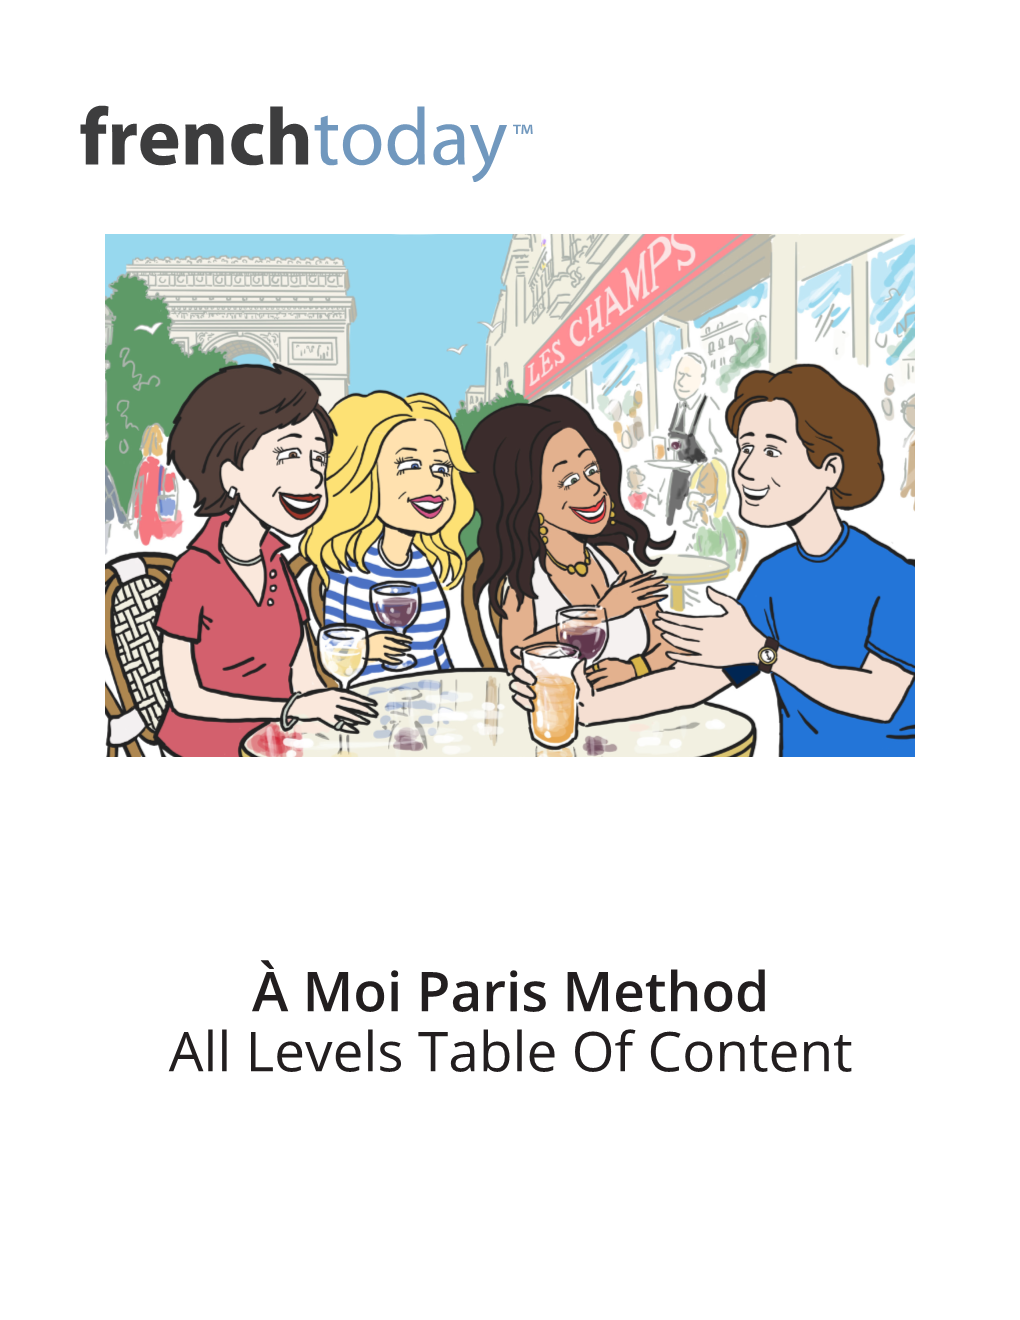 À Moi Paris Method All Levels Table of Content ™